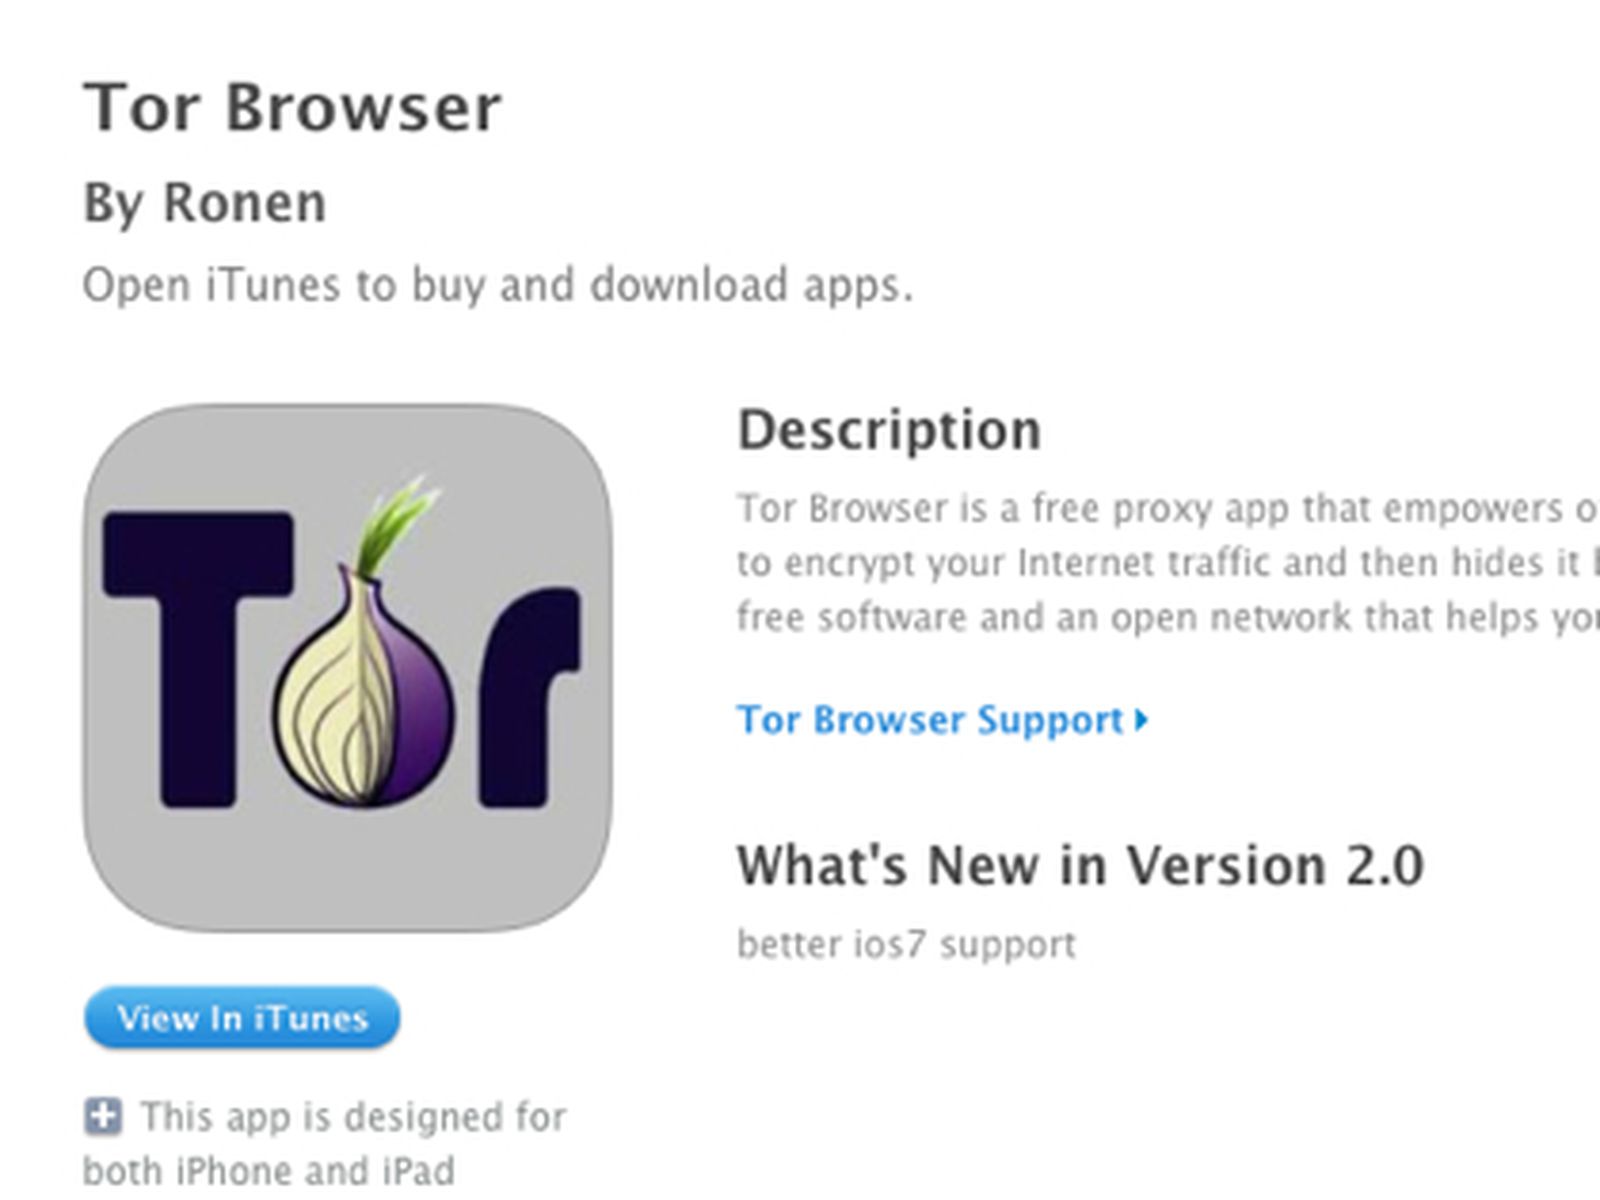 скачать бесплатно tor browser для ipad гирда